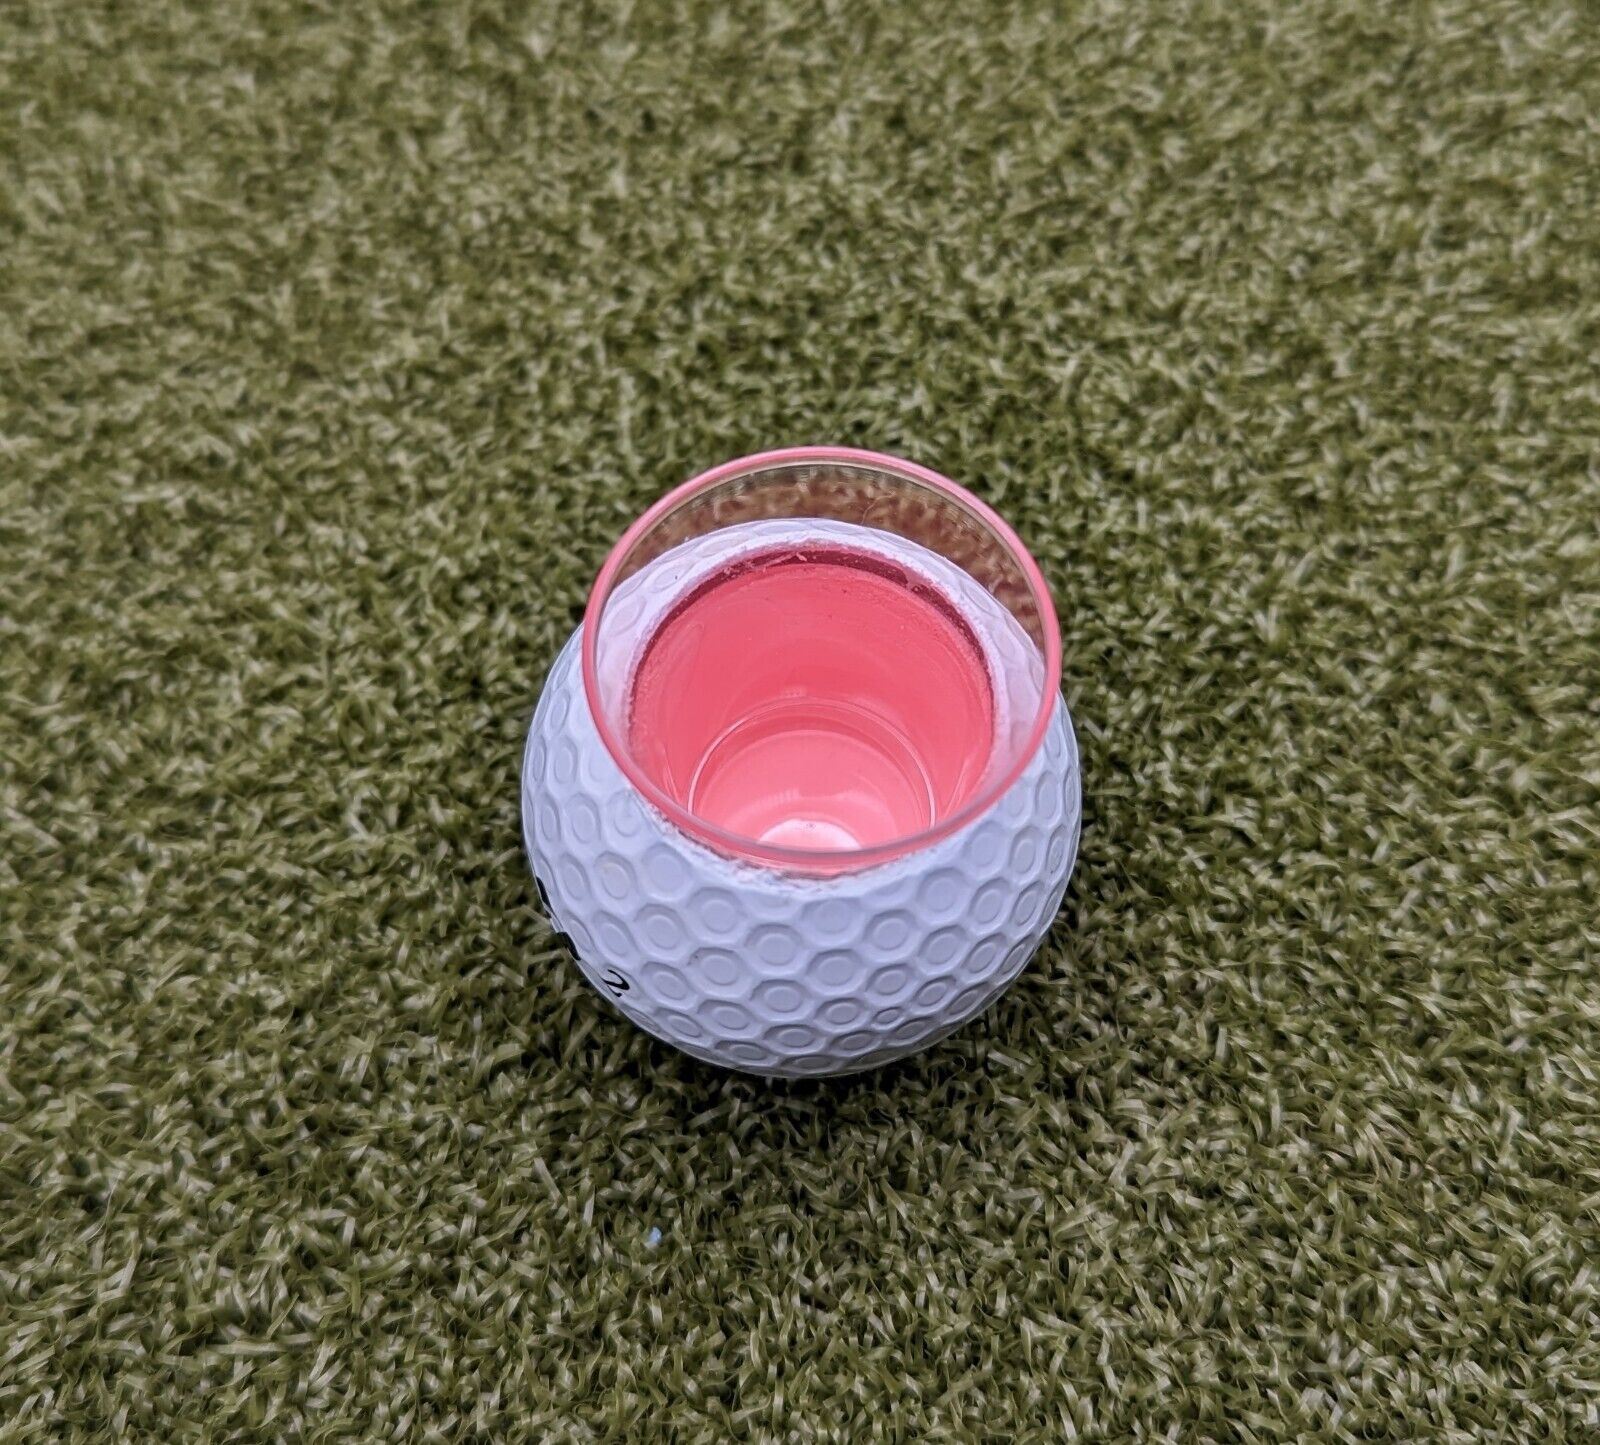 Bridgestone E12 Real Golf Ball .5oz Shot Glass Unbranded - фотография #2